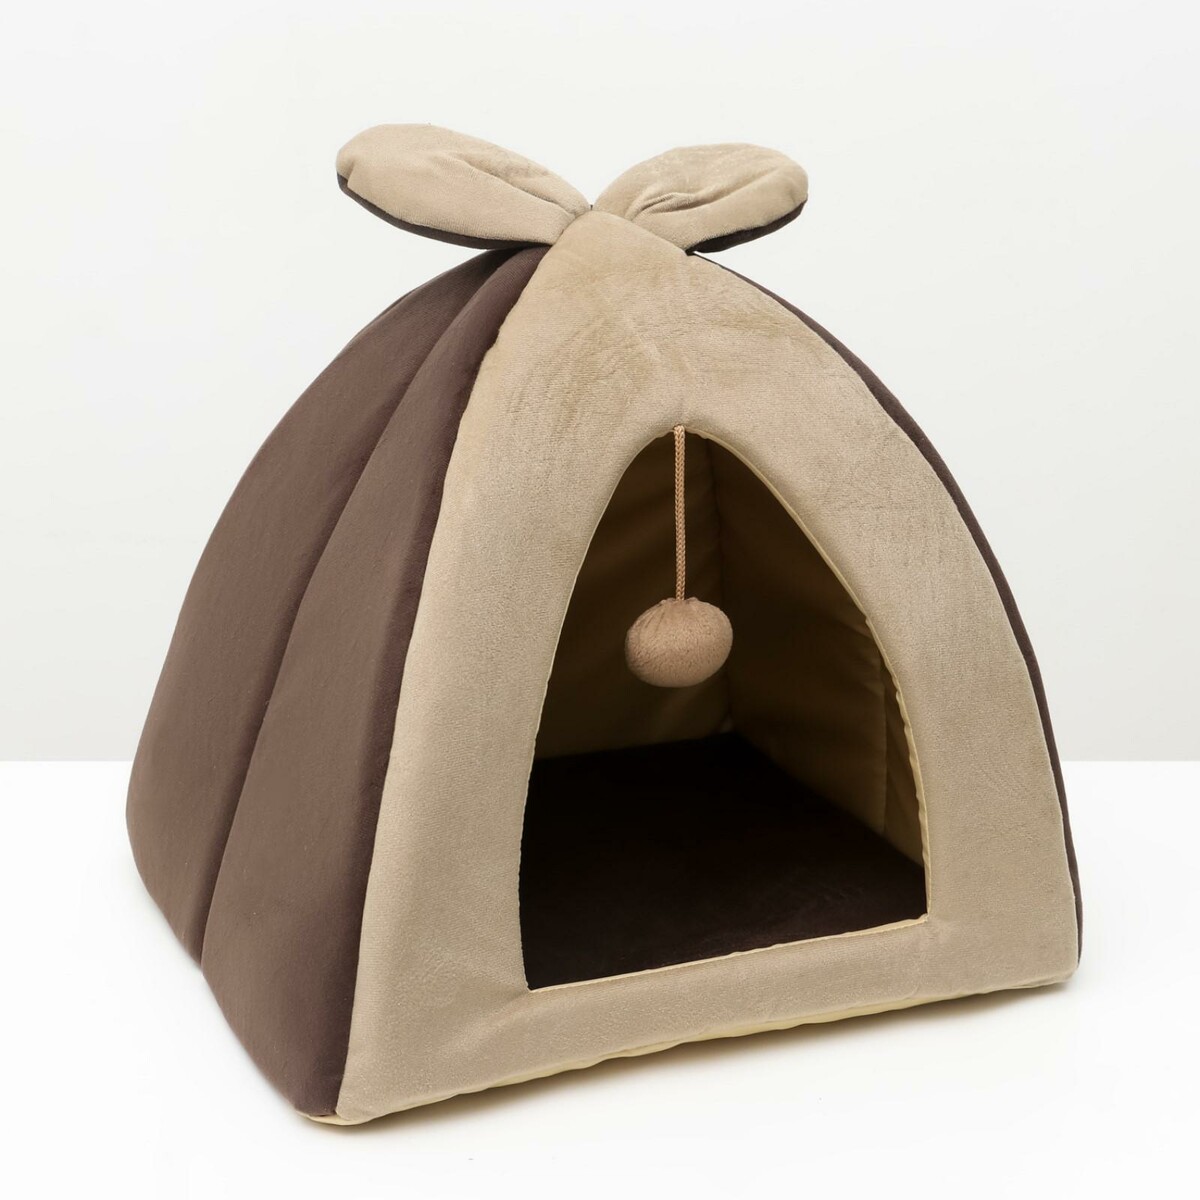 Домик-вигвам с ушками и шариком, 40 х 40 х 37 см, мебельная ткань, коричневый палатка vamigvam вигвам зеленый лен vv011252